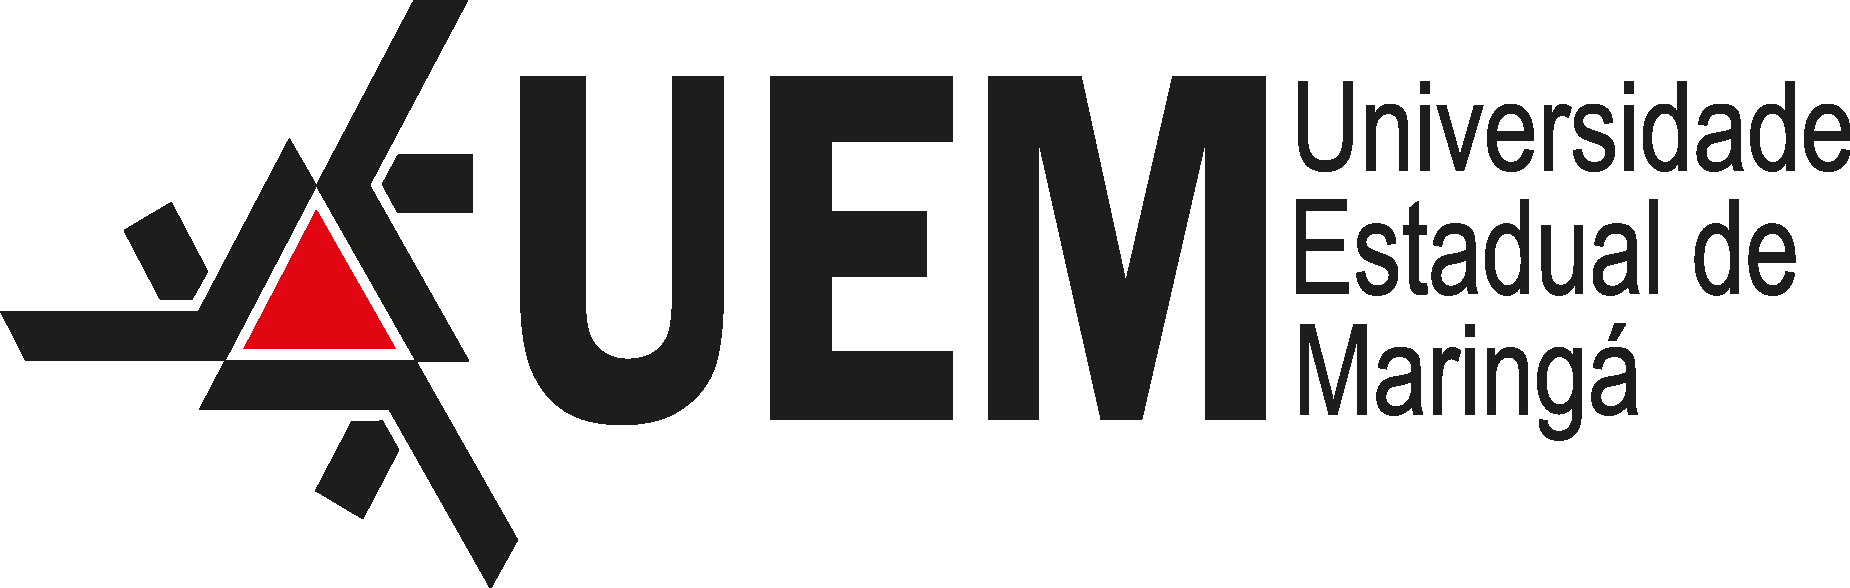 Universidade Estadual de Maringá UEM Logo Vector - (.Ai .PNG .SVG .EPS ...